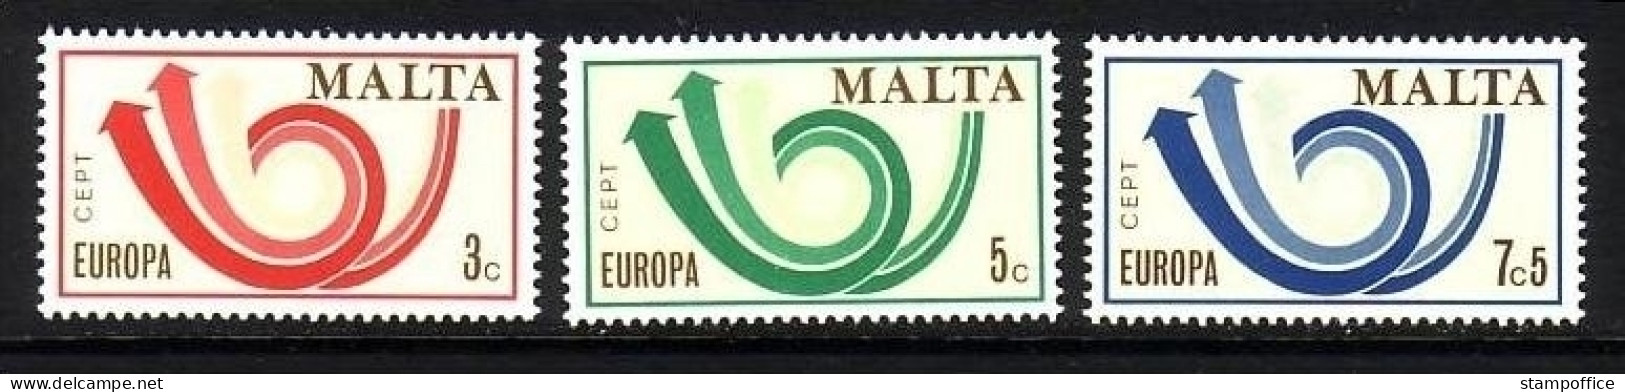 MALTA MI-NR. 472-474 POSTFRISCH(MINT) EUROPA 1973 POSTHORN - 1973